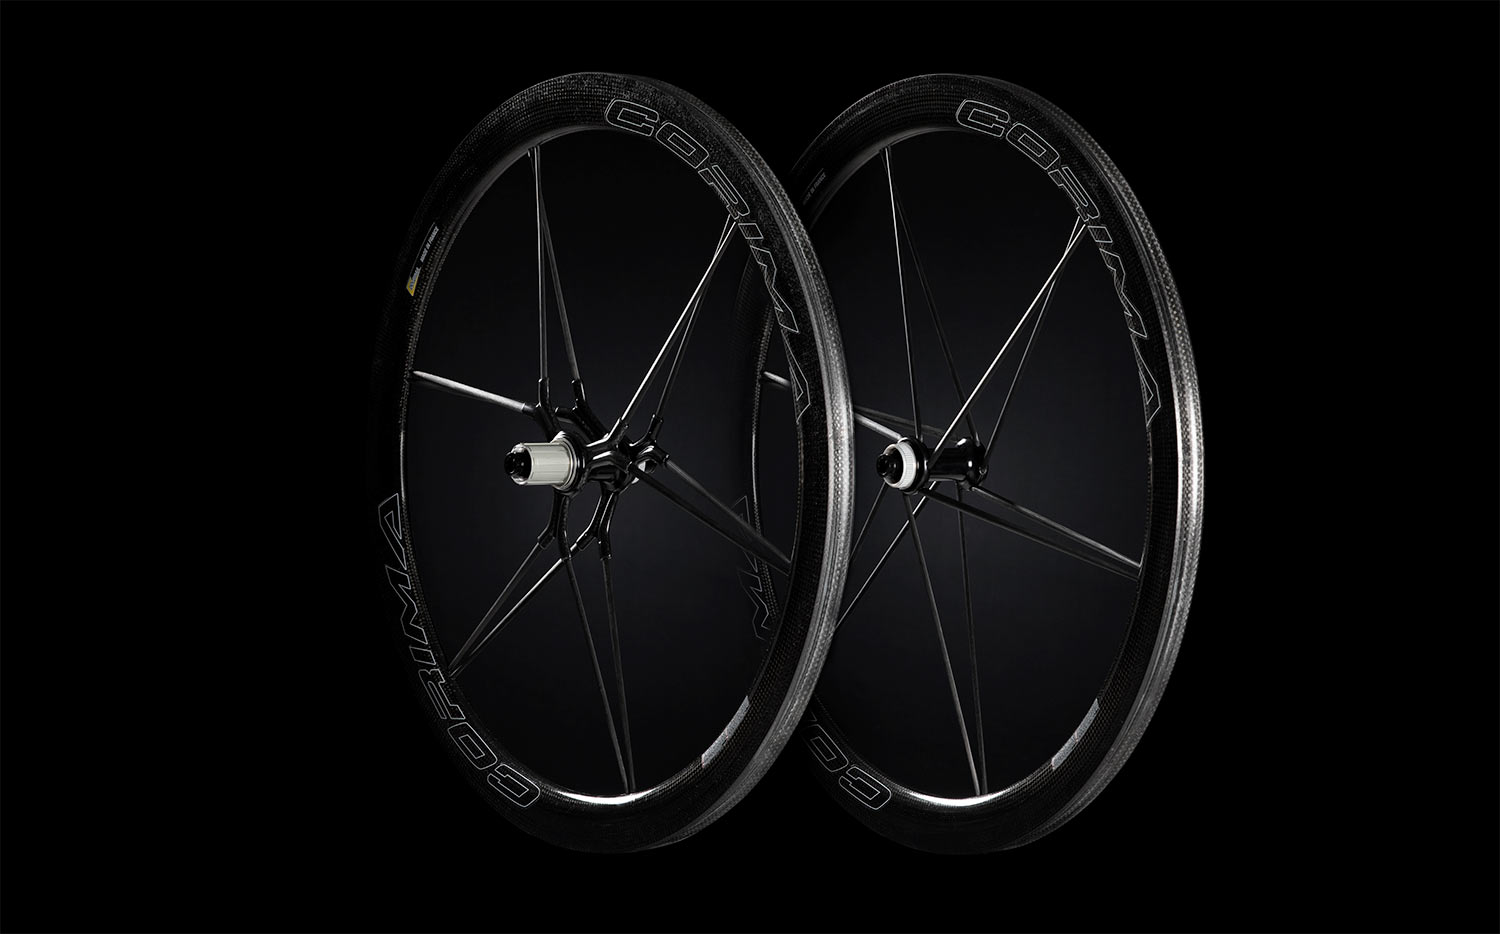 corima mcc dx aero disc brake wheels with carbon fiber spokes